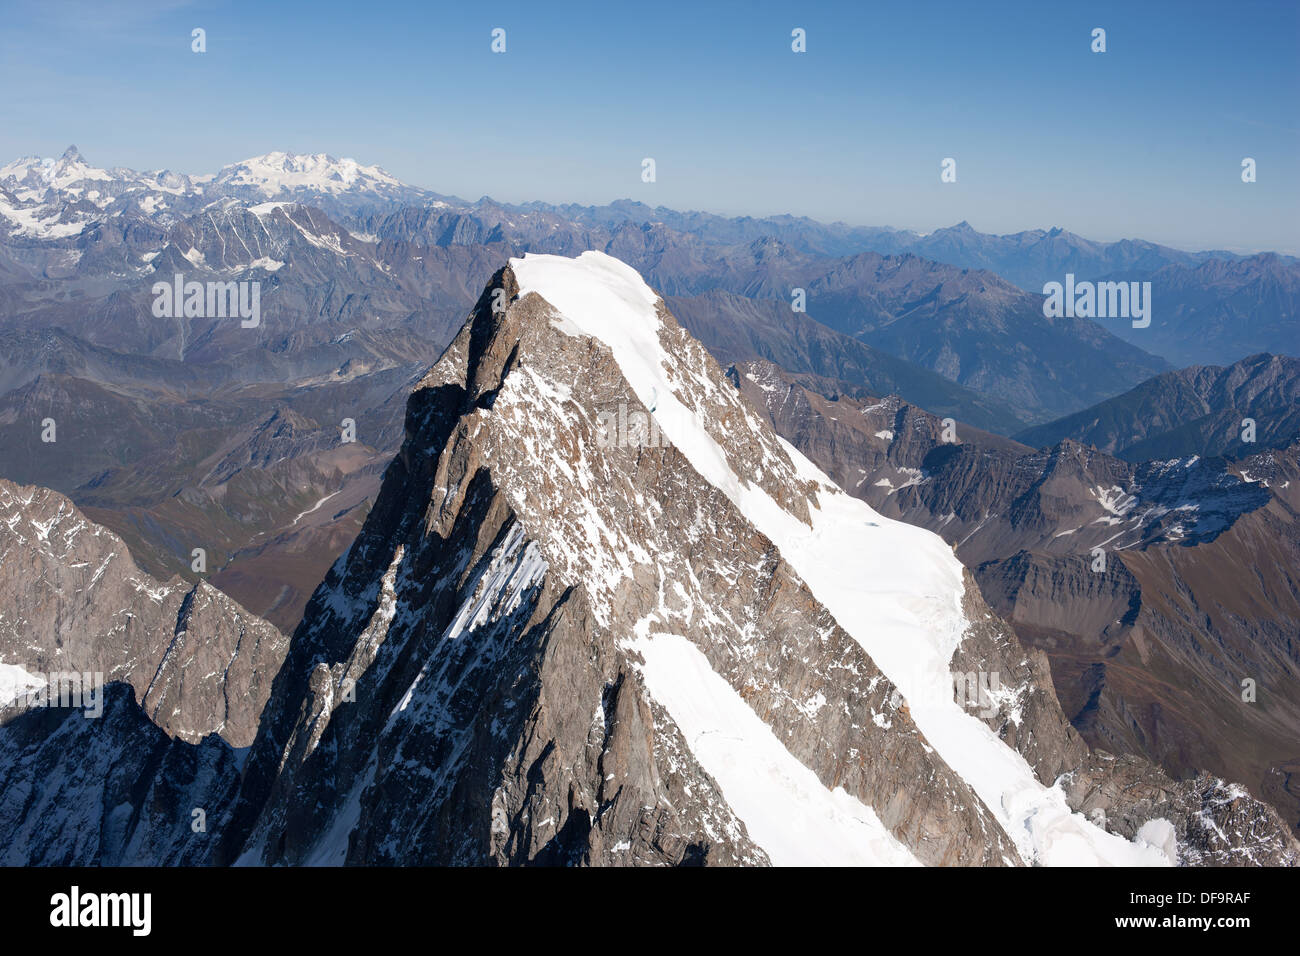 VUE AÉRIENNE.Grandes Jorasses (altitude : 4208m), Matterhorn et Monte Rosa au loin.Entre Chamonix, France (ombre) et Courmayeur, Italie. Banque D'Images